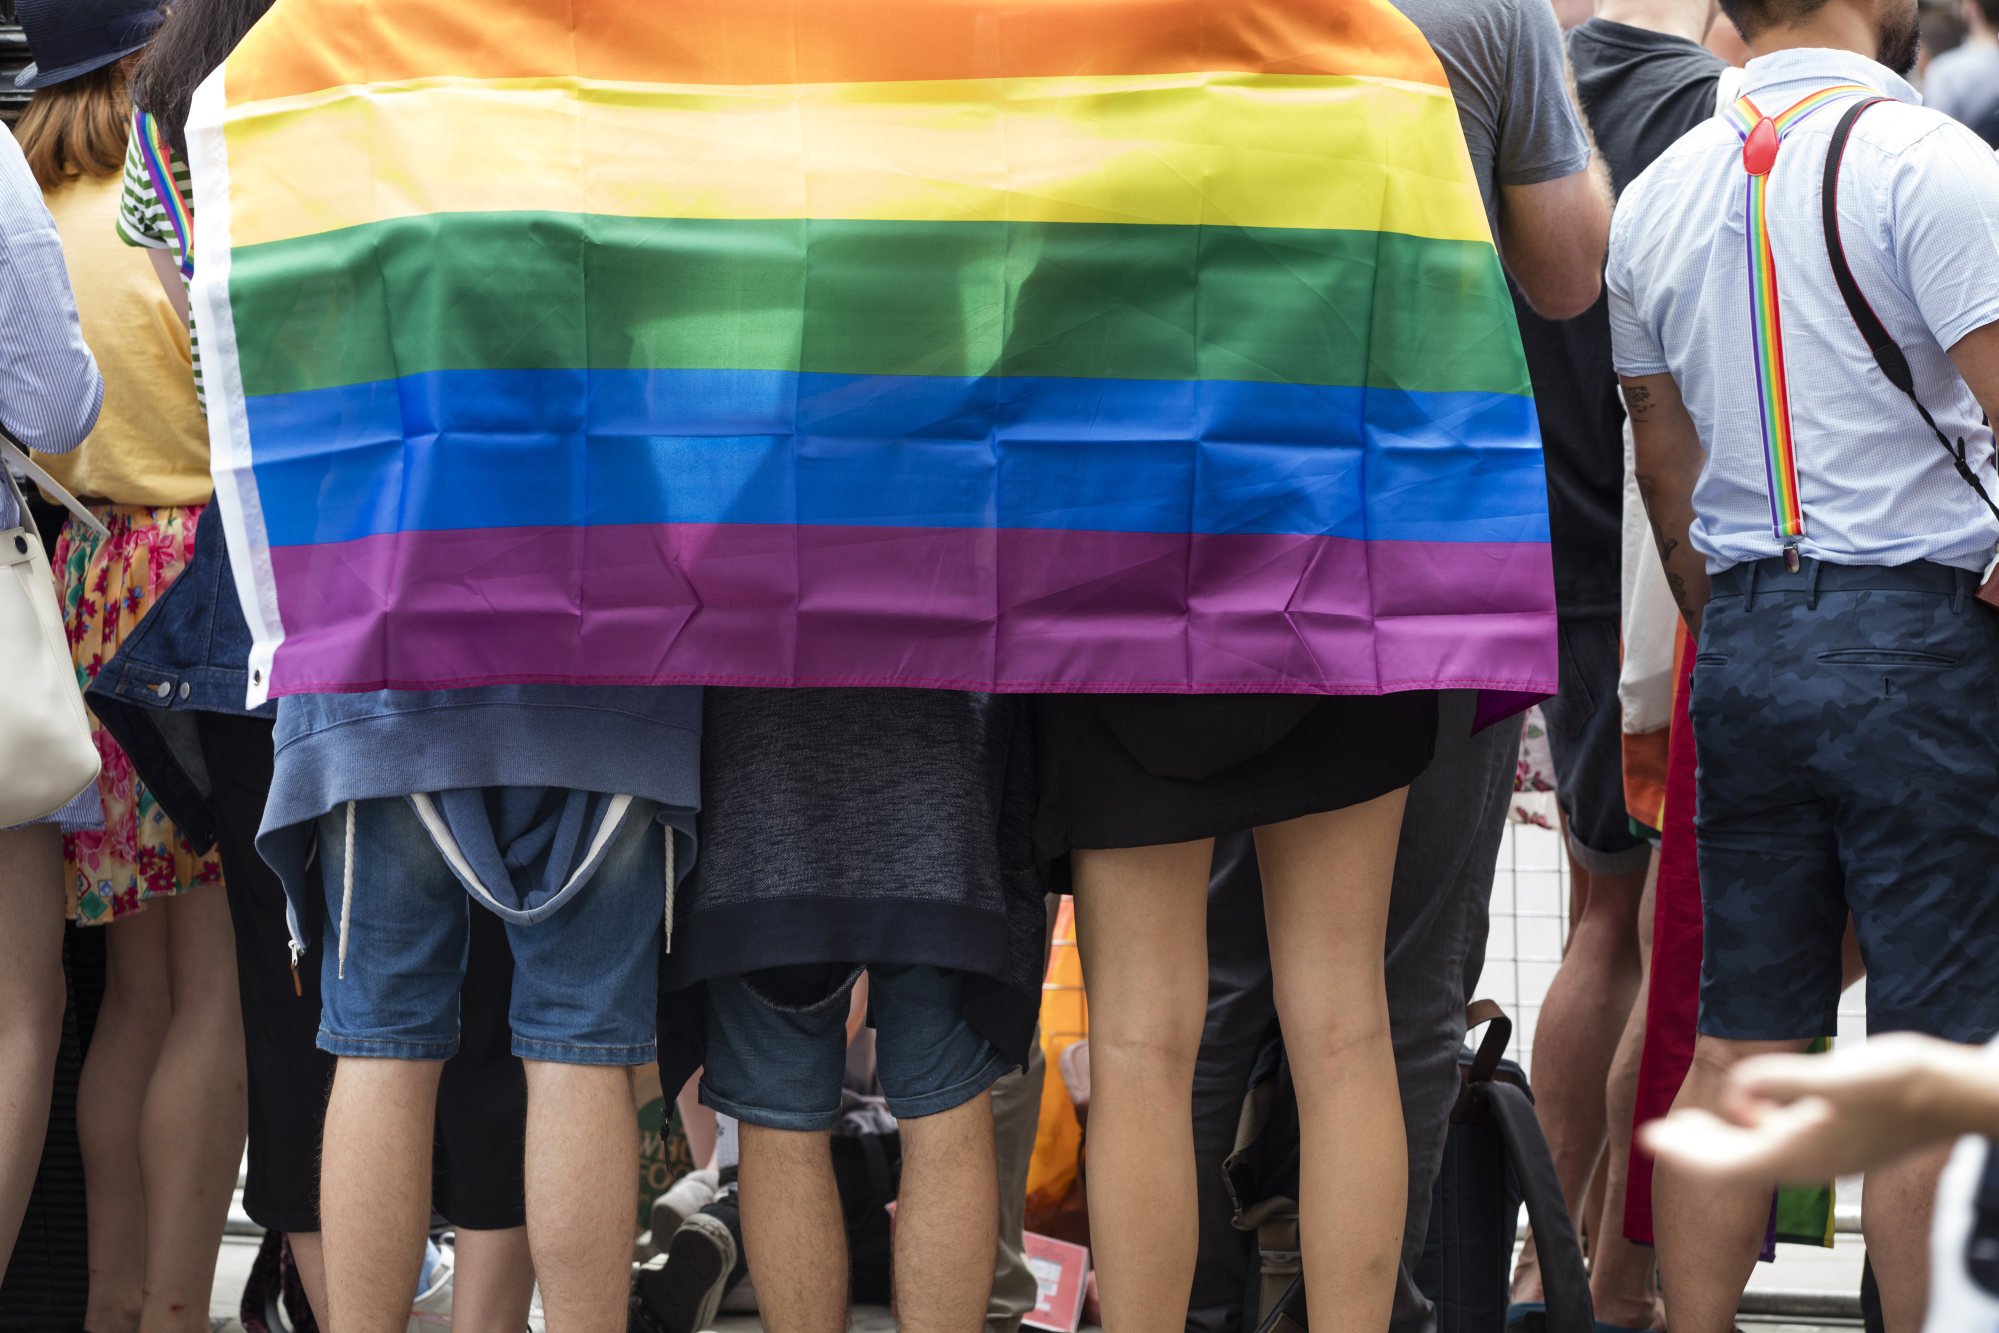 Китай декриминализировал гомосексуализм в 1997 году и был исключен из списка психических расстройств в 2001 году. Но в 2021 году суд поддержал решение о том, что учебник, называющий гомосексуализм психическим расстройством, не является неправильным.